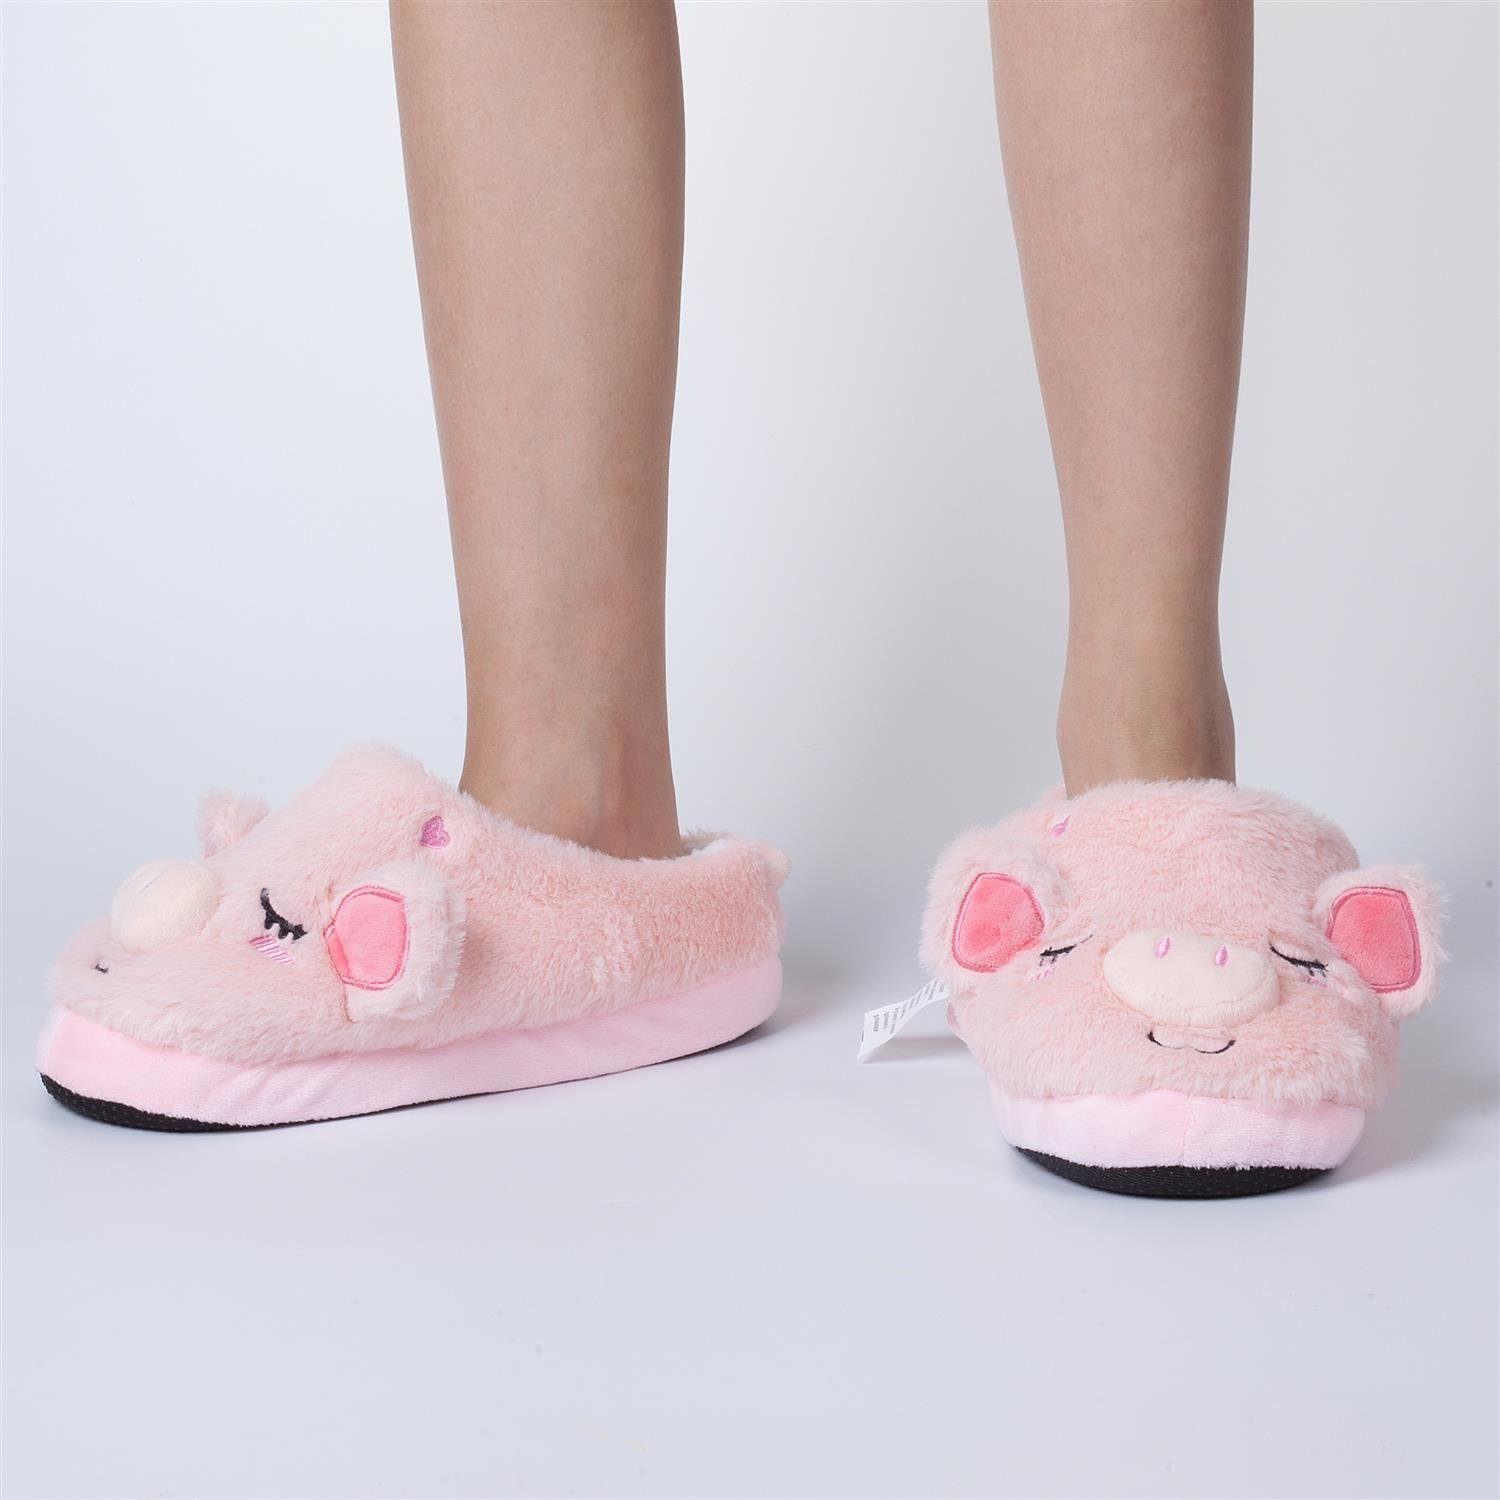 Pantoffeln (hinten Plüsch Kuschelige Schweinchen Katara (Schwein, Hausschuhe geschlossen) rosa Lama, Bär) Tier